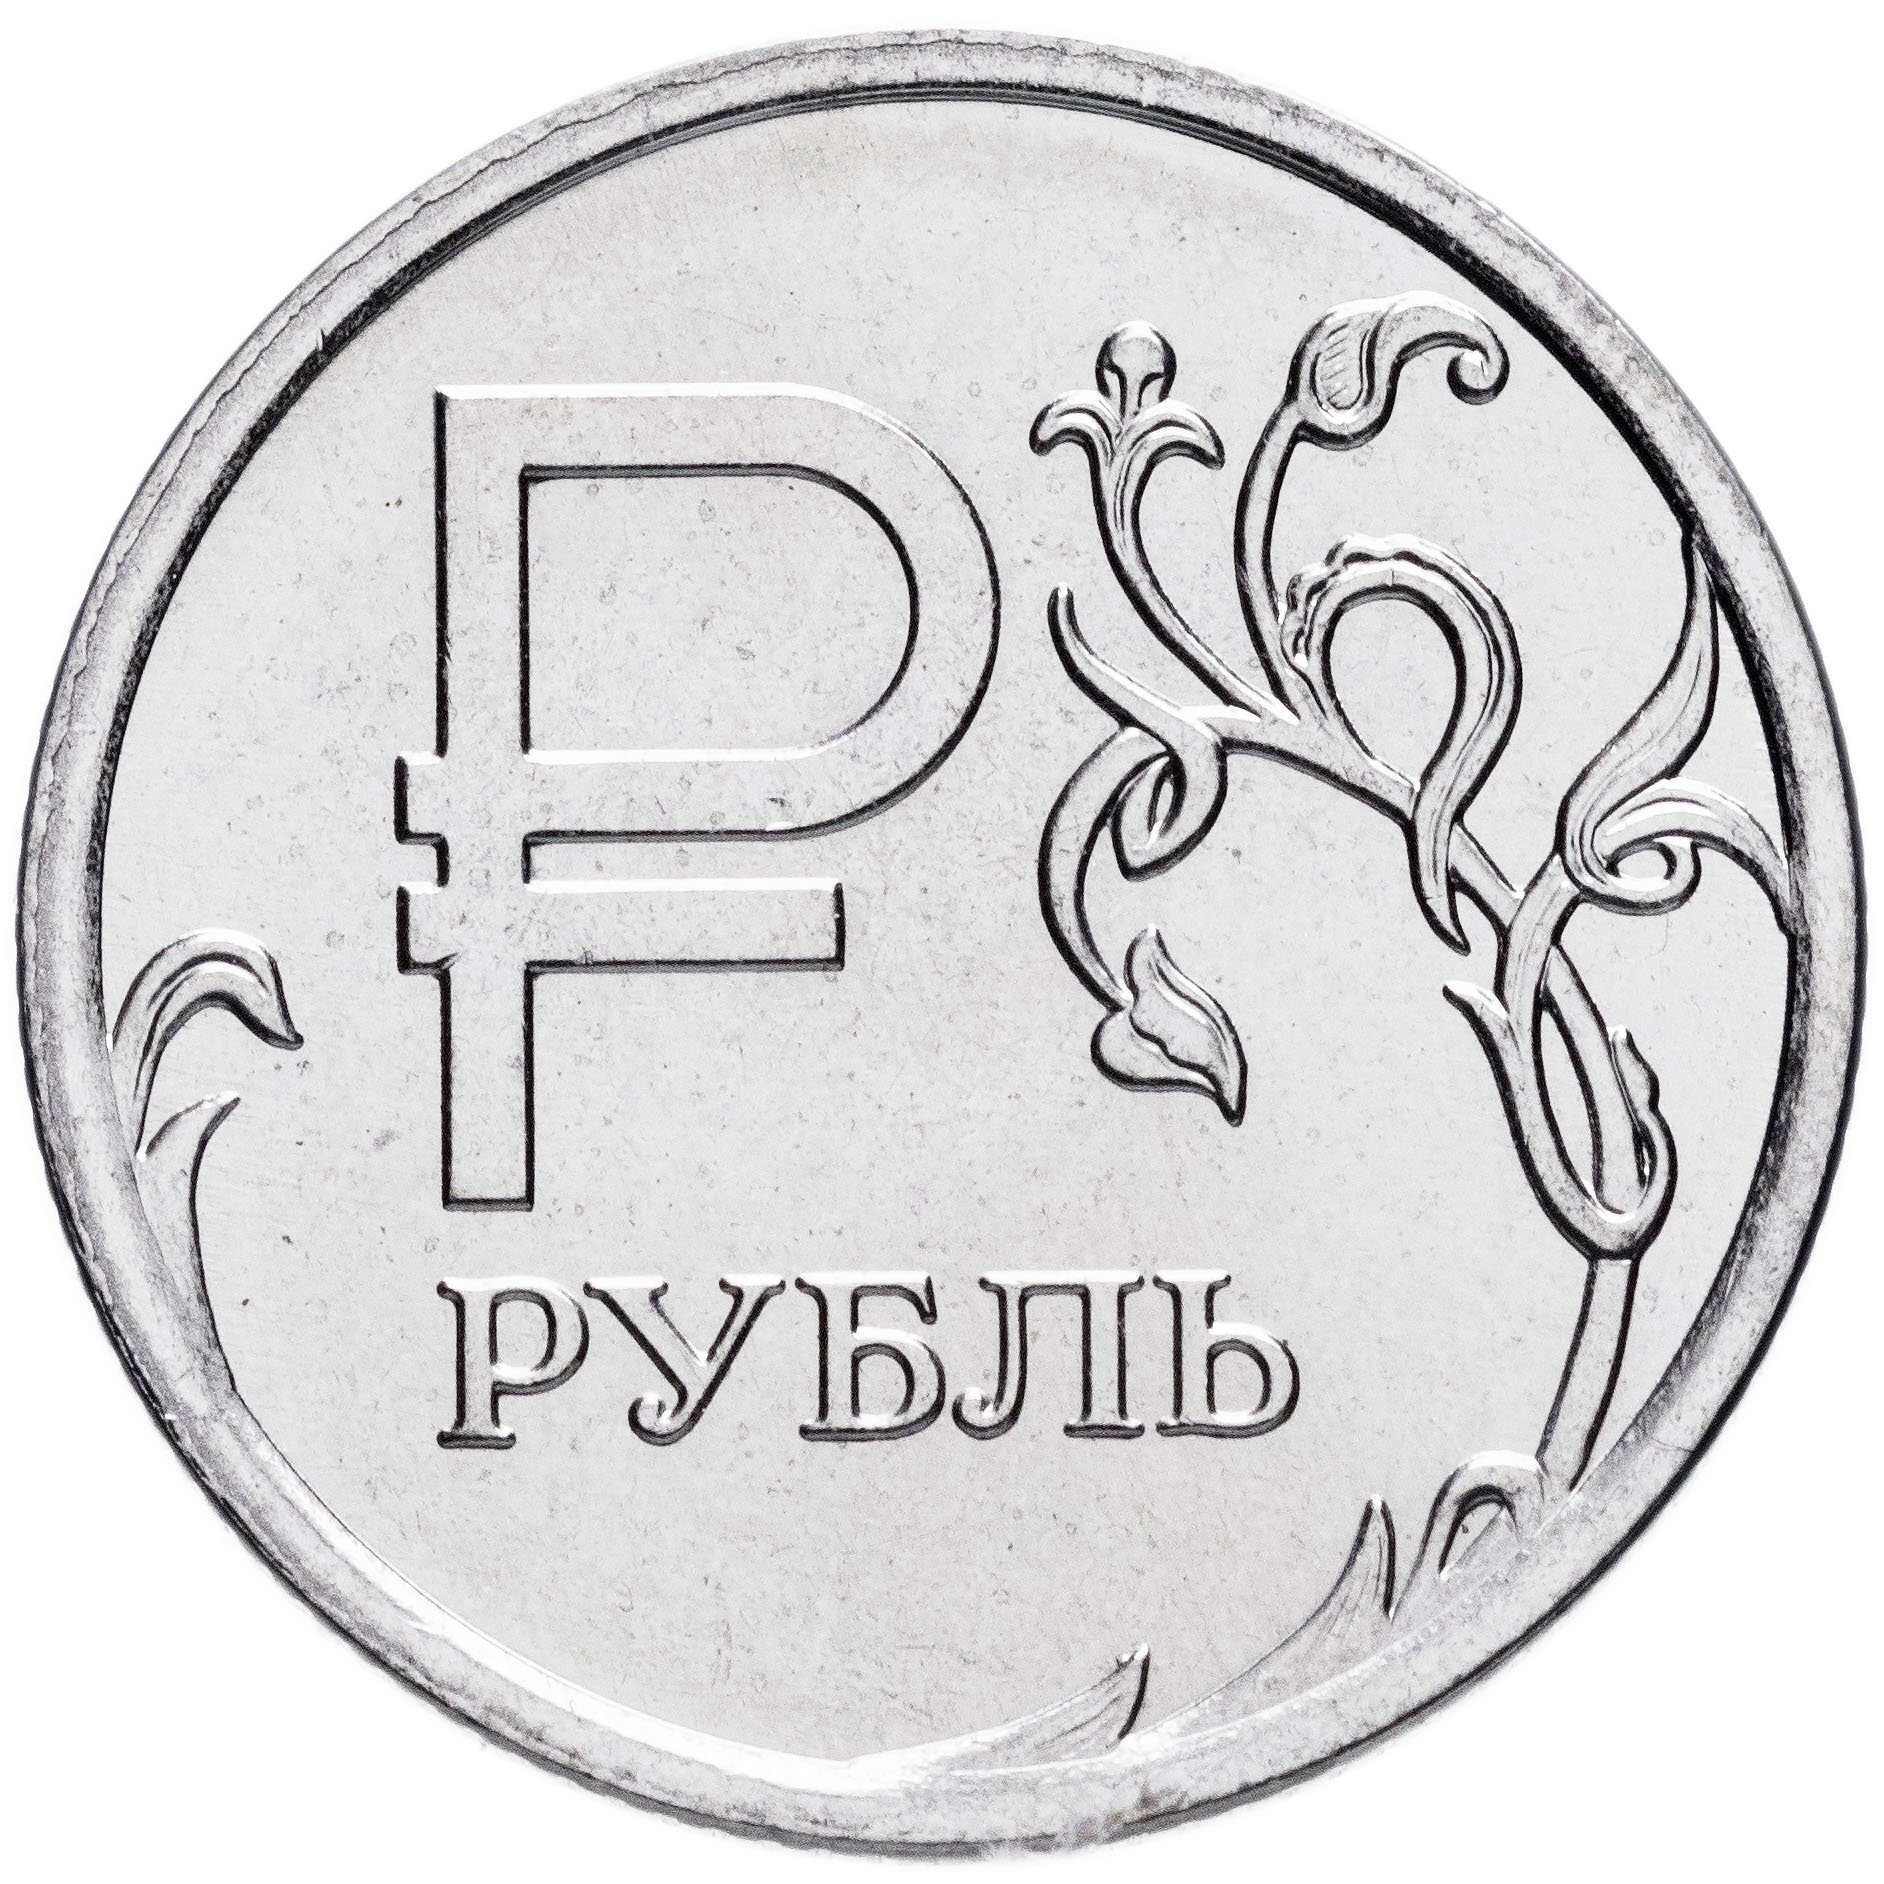 Наибольший номинал рубля